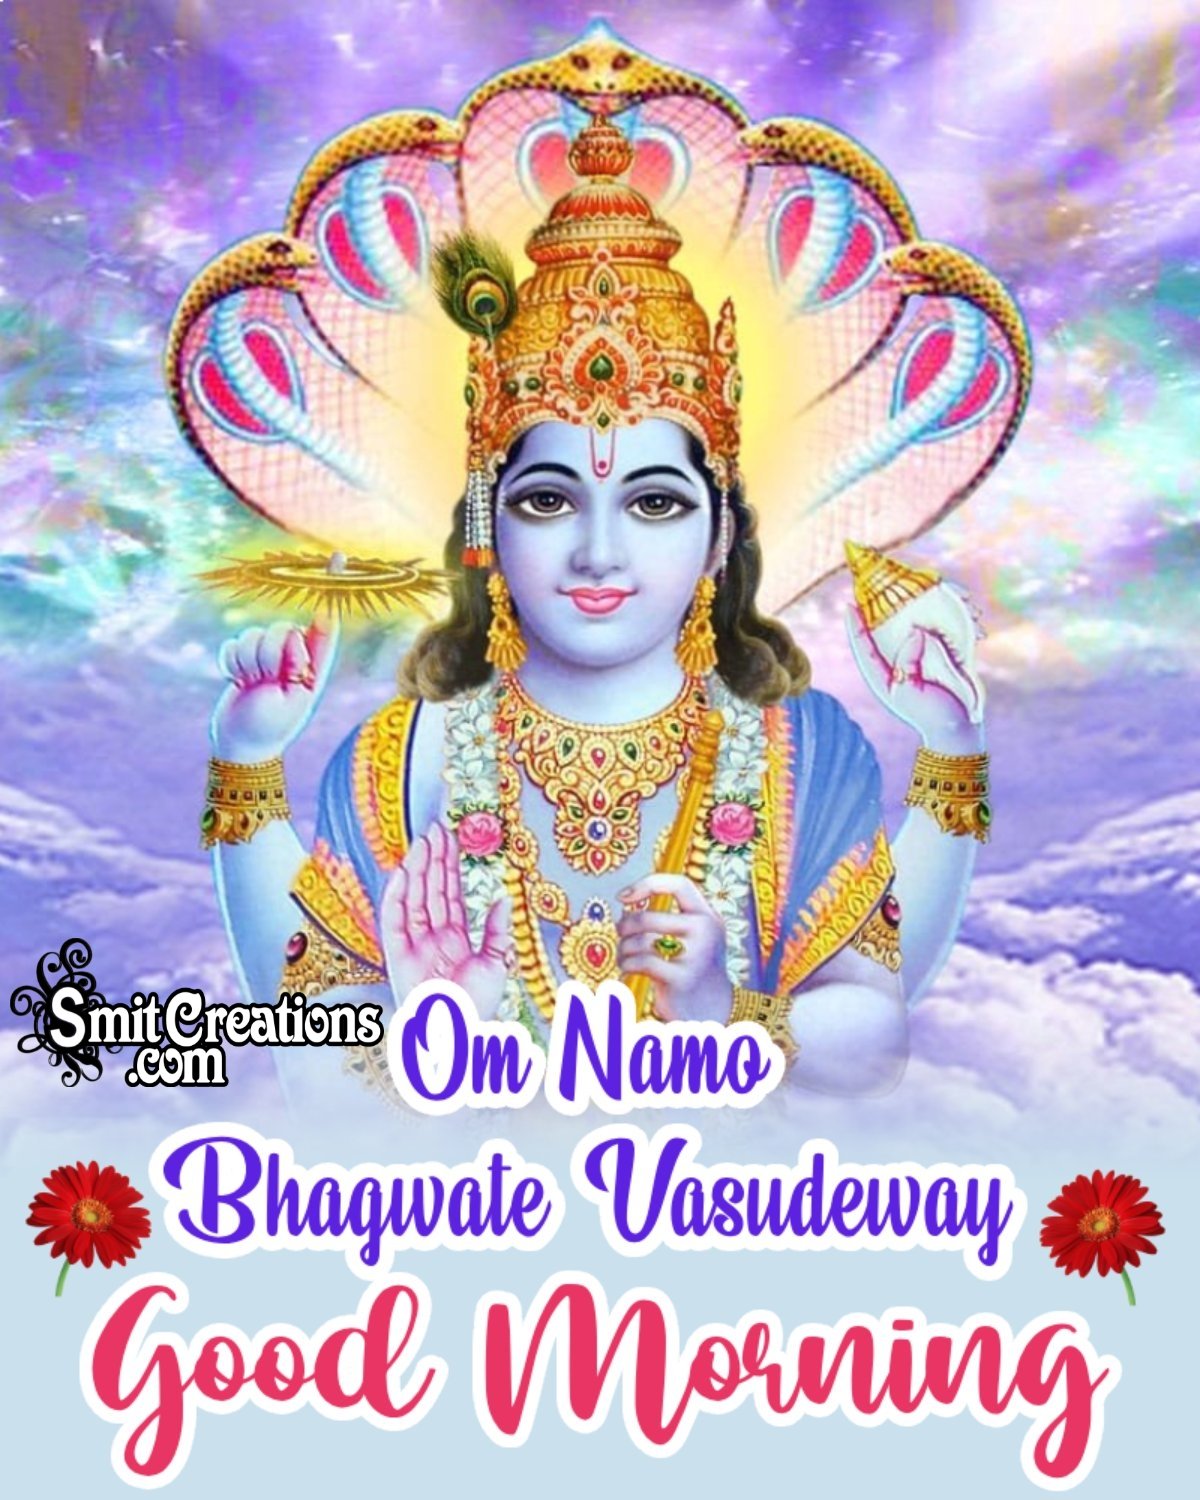 Om Namo Bhagwate Vasudeway Good Morning